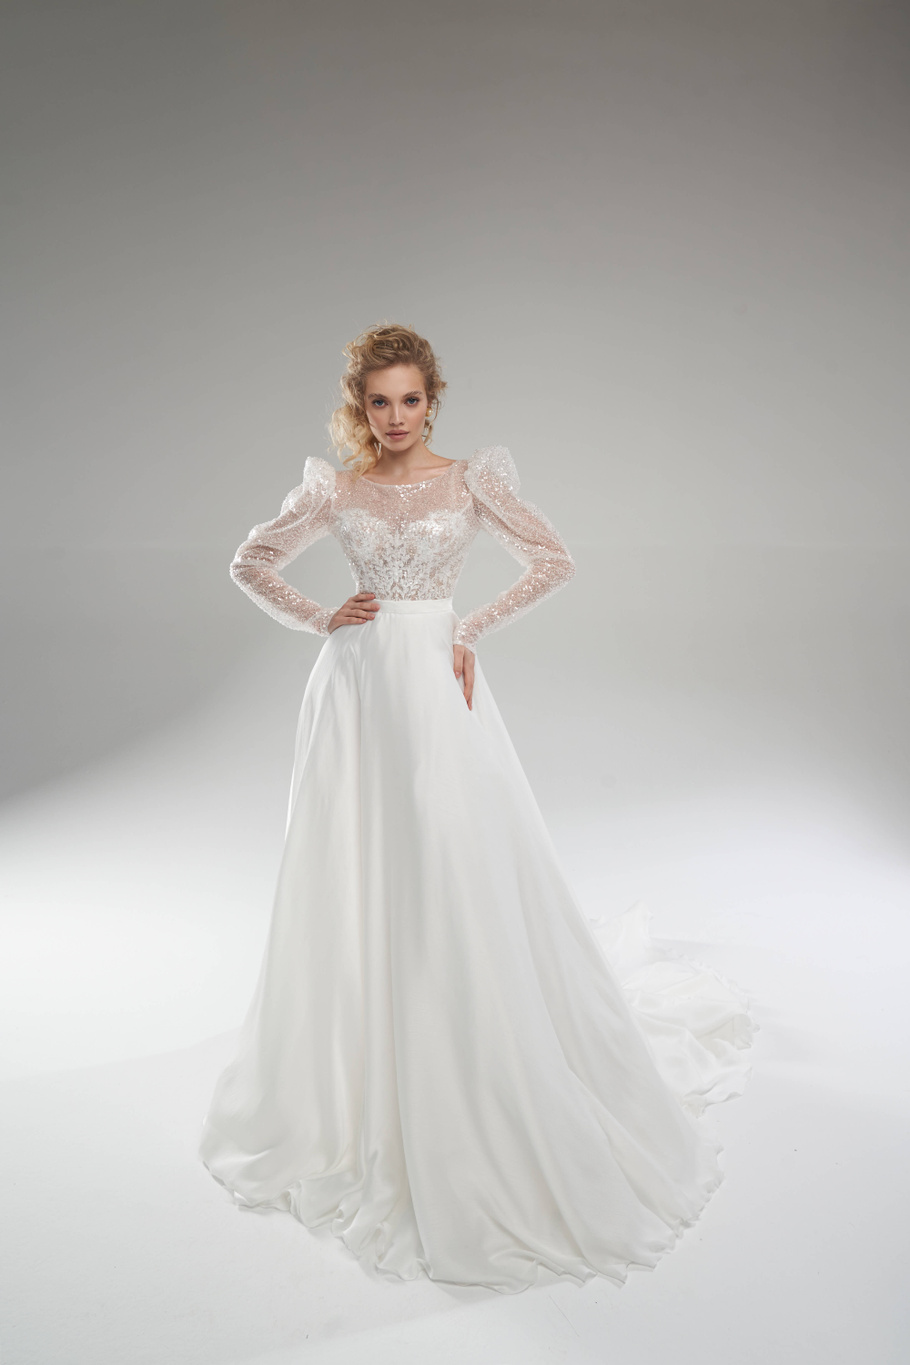 Купить свадебное платье «Релей» Рара Авис из коллекции Пьюр 2022 года в салоне «Мэри Трюфель»